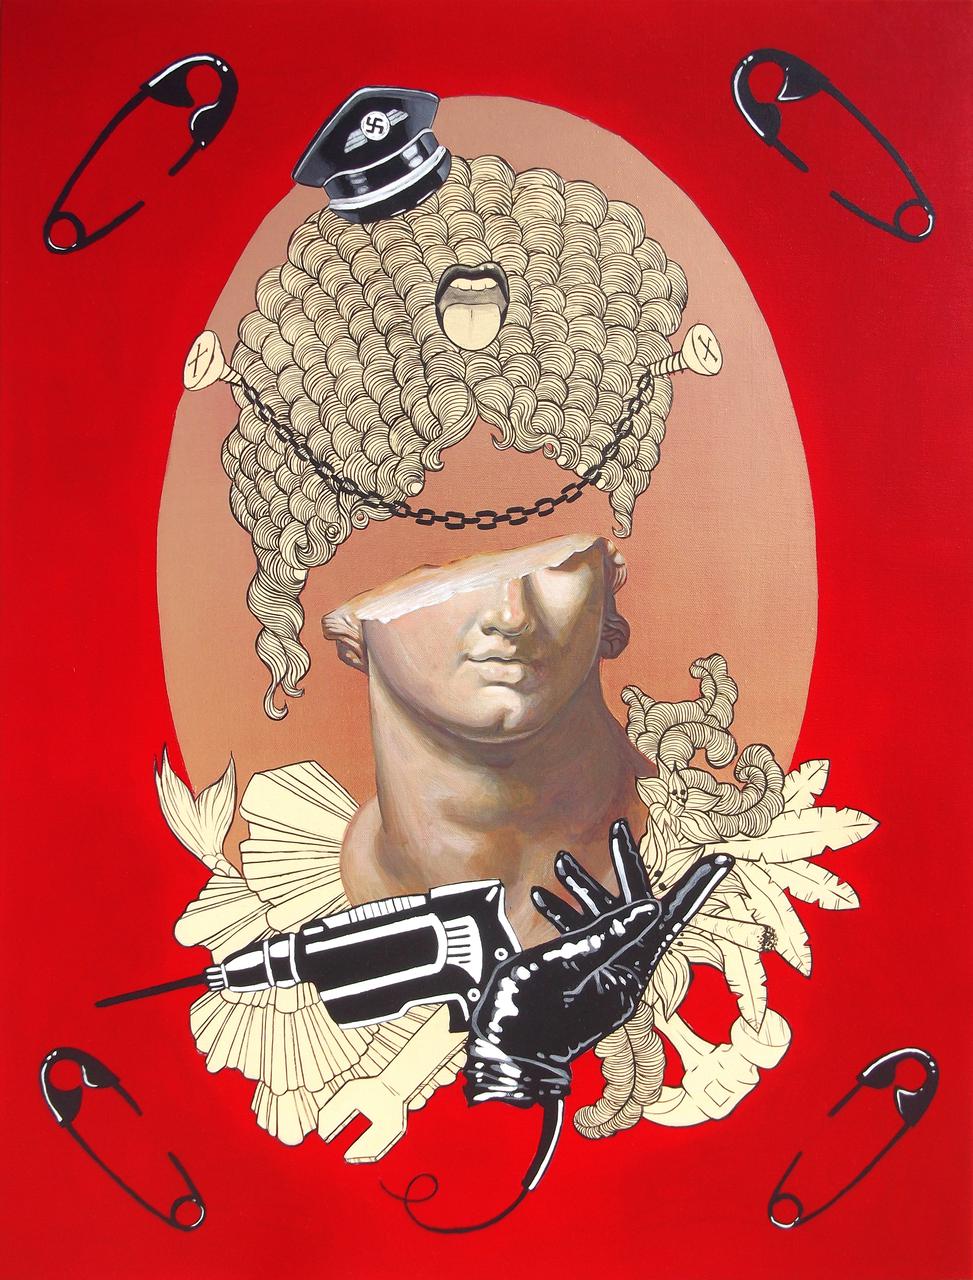 Western Civilization, acrylic on canvas, 60 x 80 cm